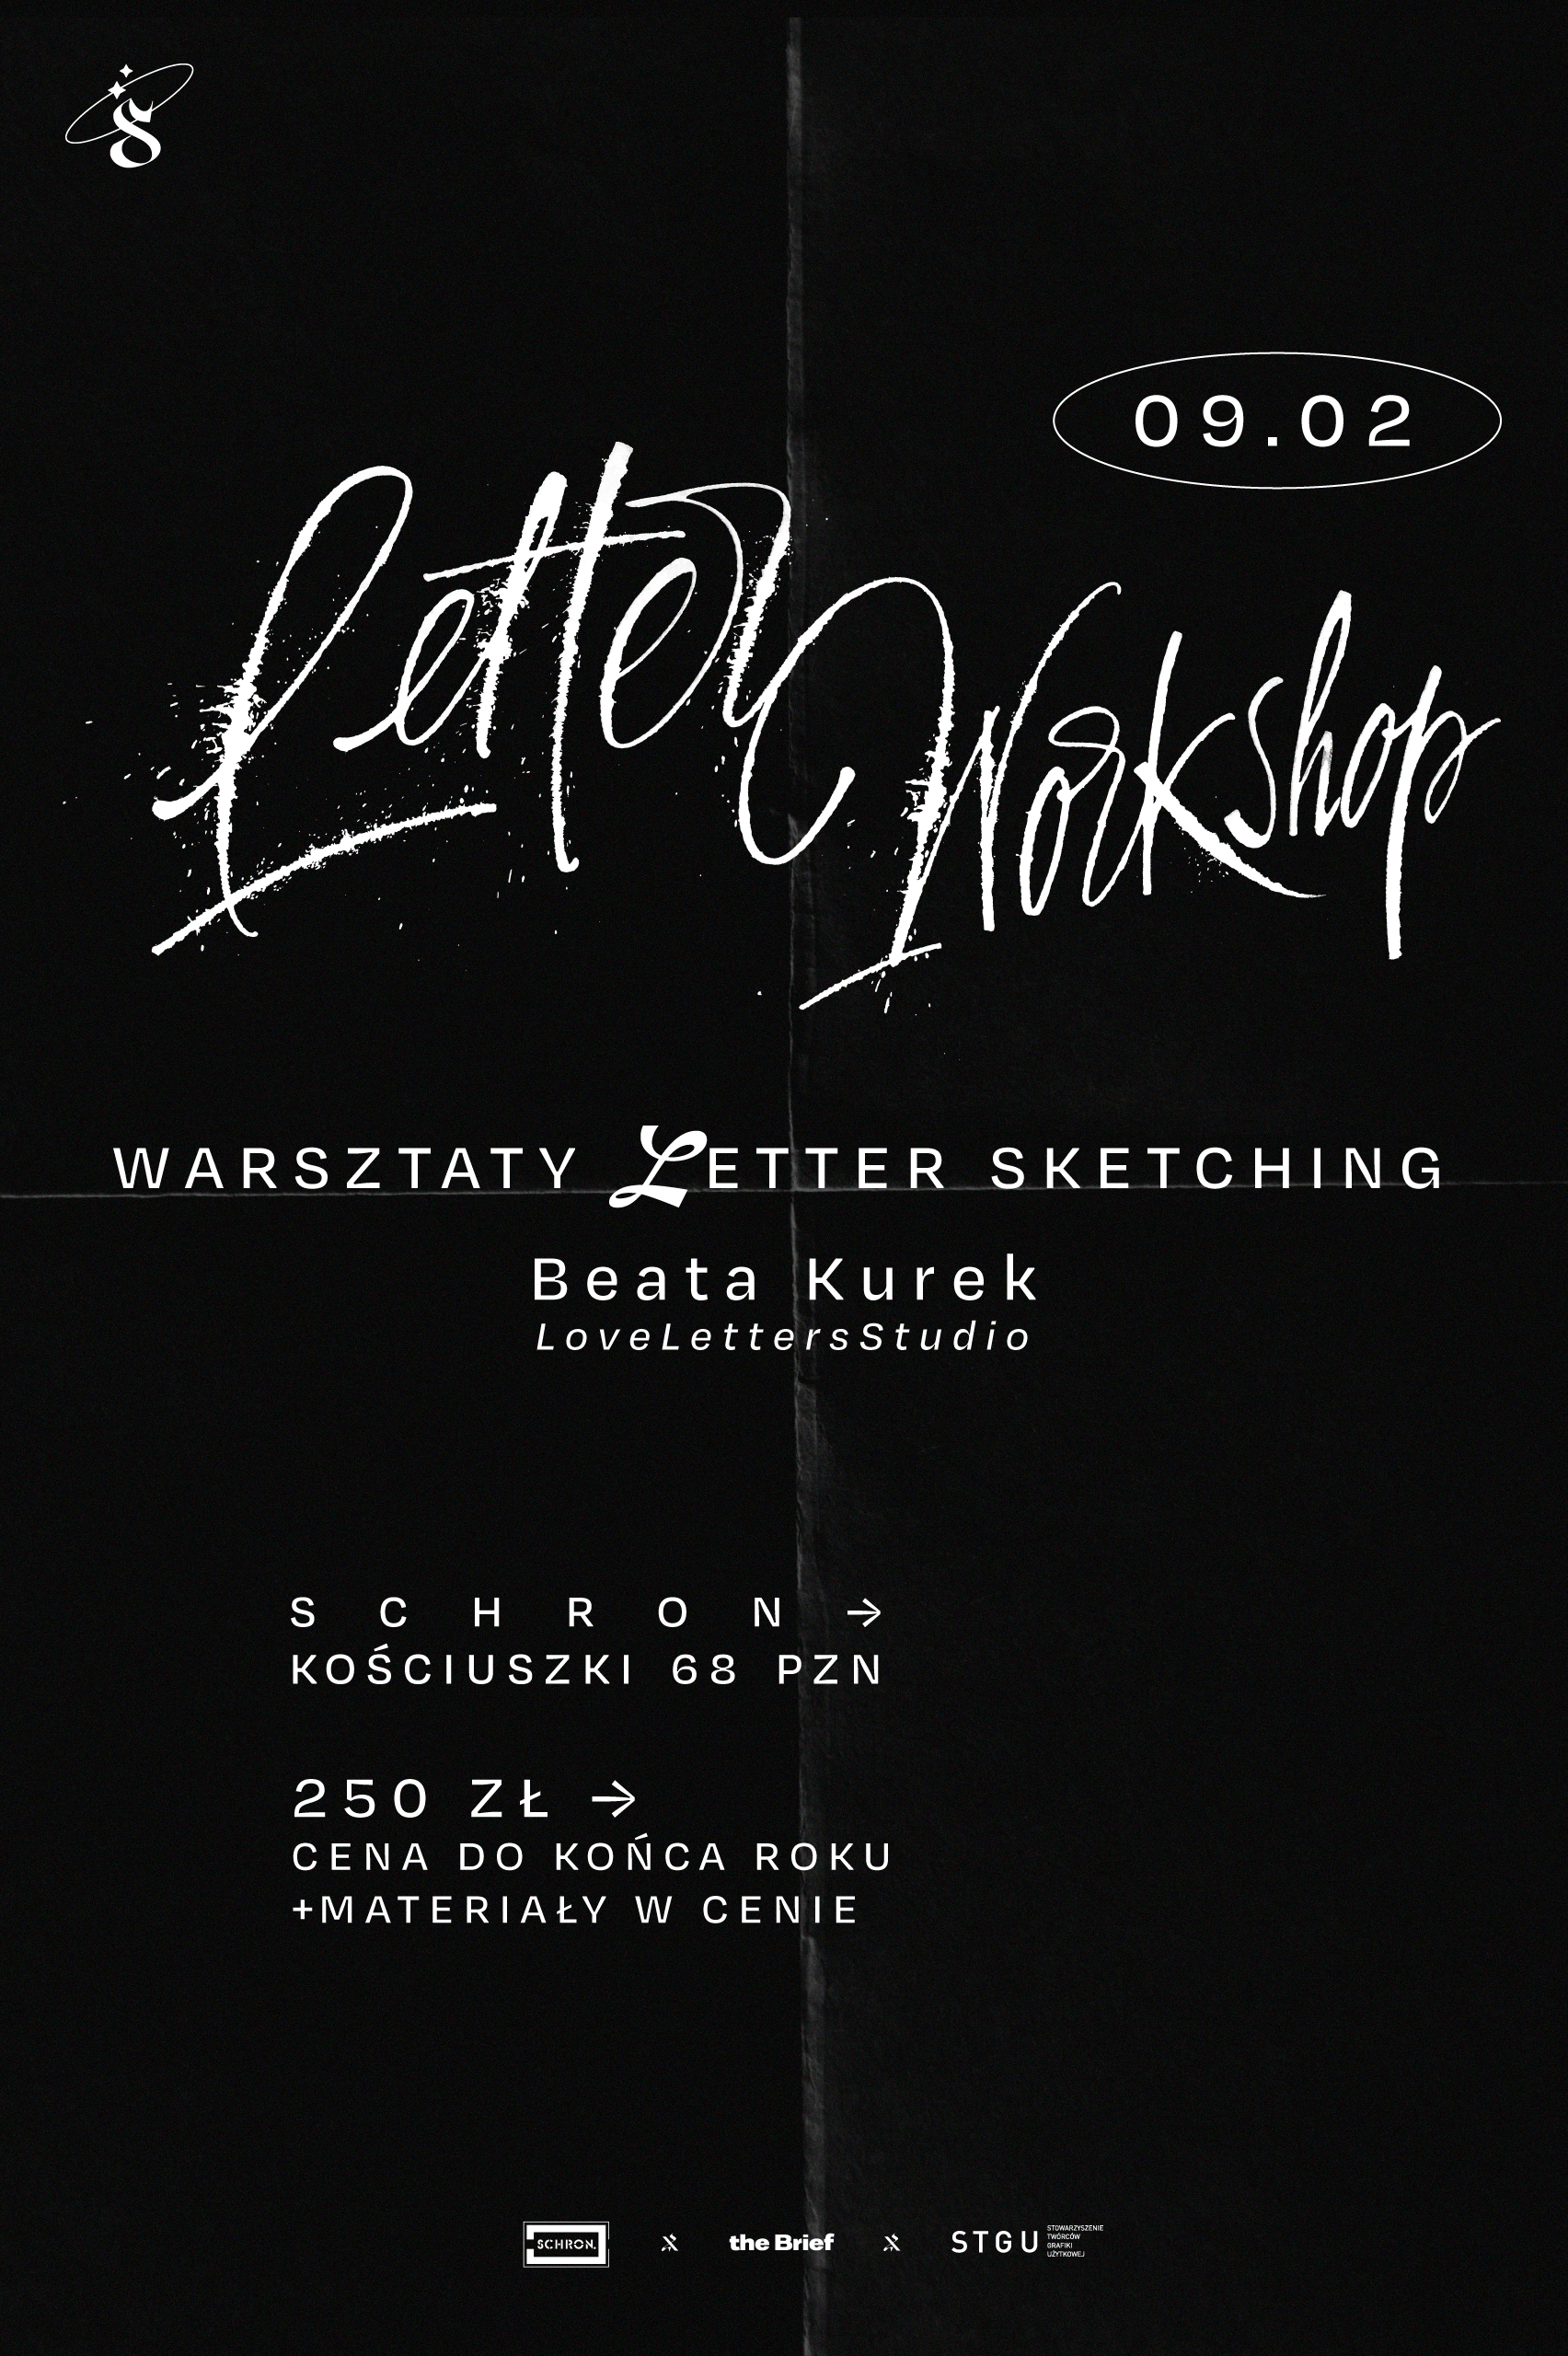 Santa Grafika: Warsztaty Letter Sketching